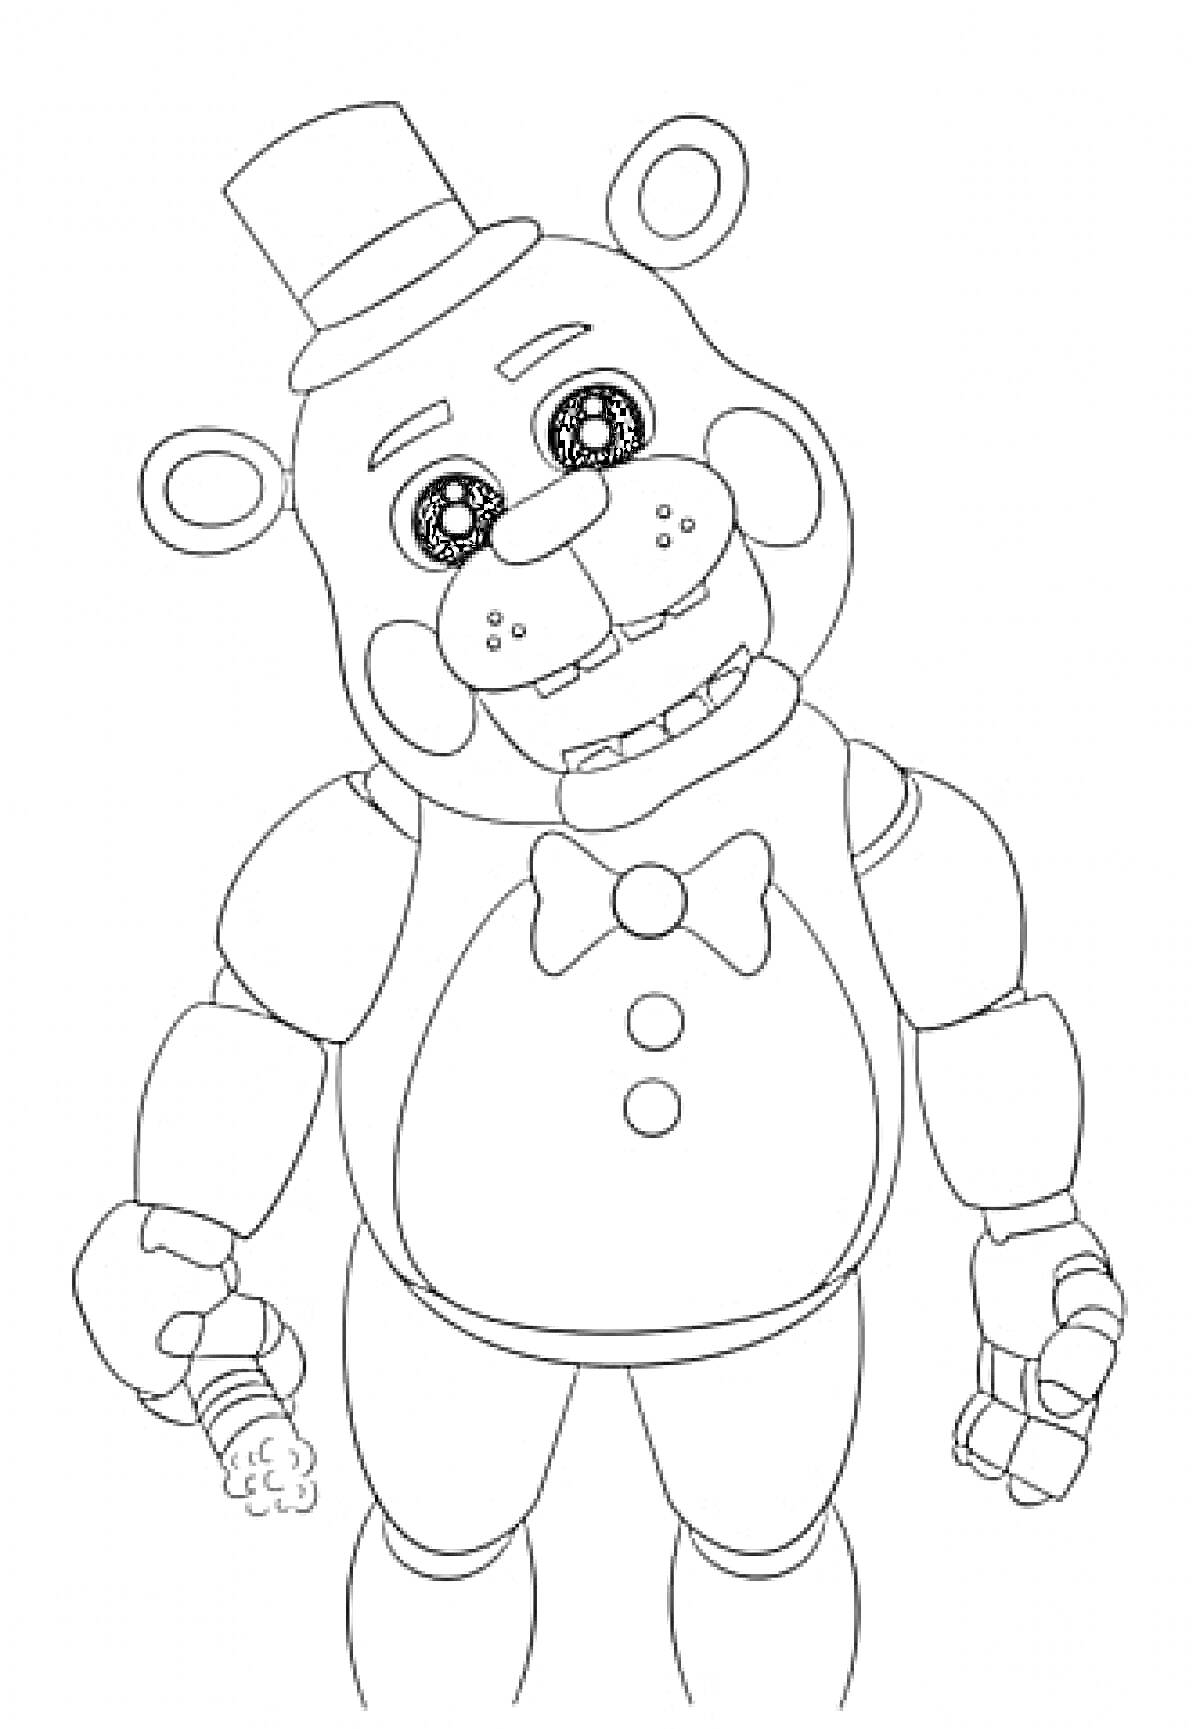 Аниматроник-медведь с галстуком-бабочкой и шляпой, держащий микрофон